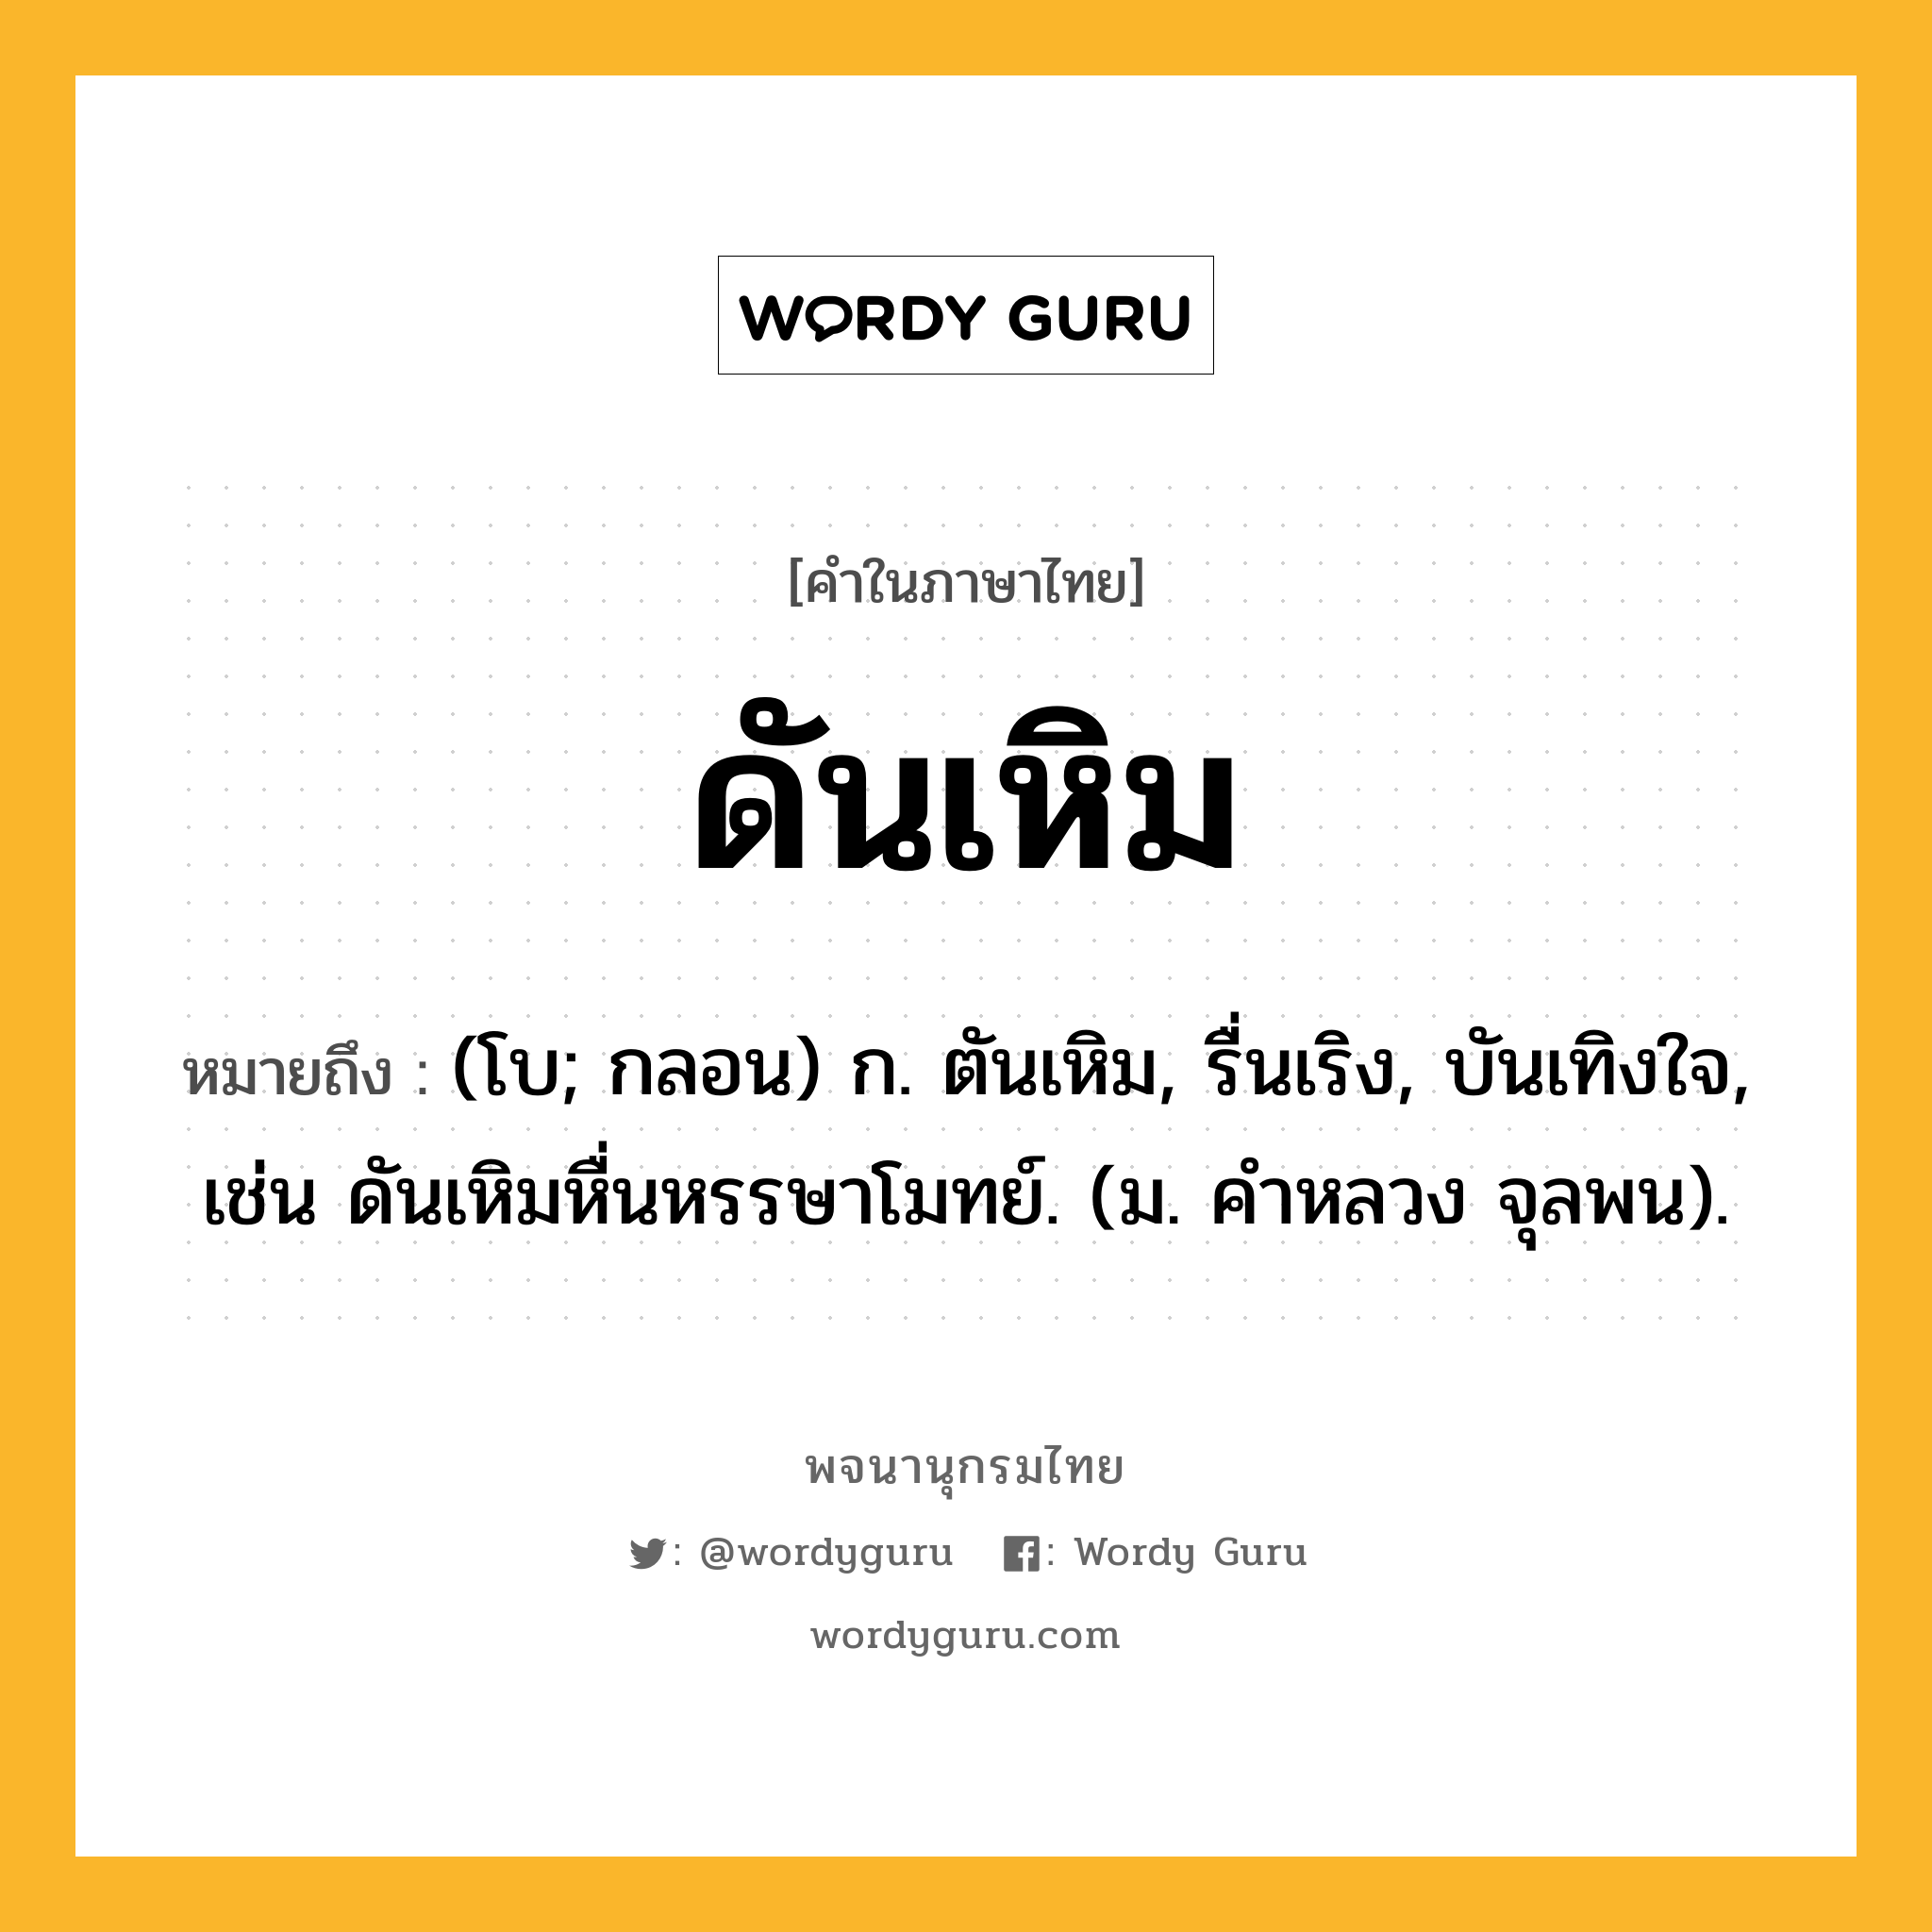 ดันเหิม ความหมาย หมายถึงอะไร?, คำในภาษาไทย ดันเหิม หมายถึง (โบ; กลอน) ก. ตันเหิม, รื่นเริง, บันเทิงใจ, เช่น ดันเหิมหื่นหรรษาโมทย์. (ม. คําหลวง จุลพน).